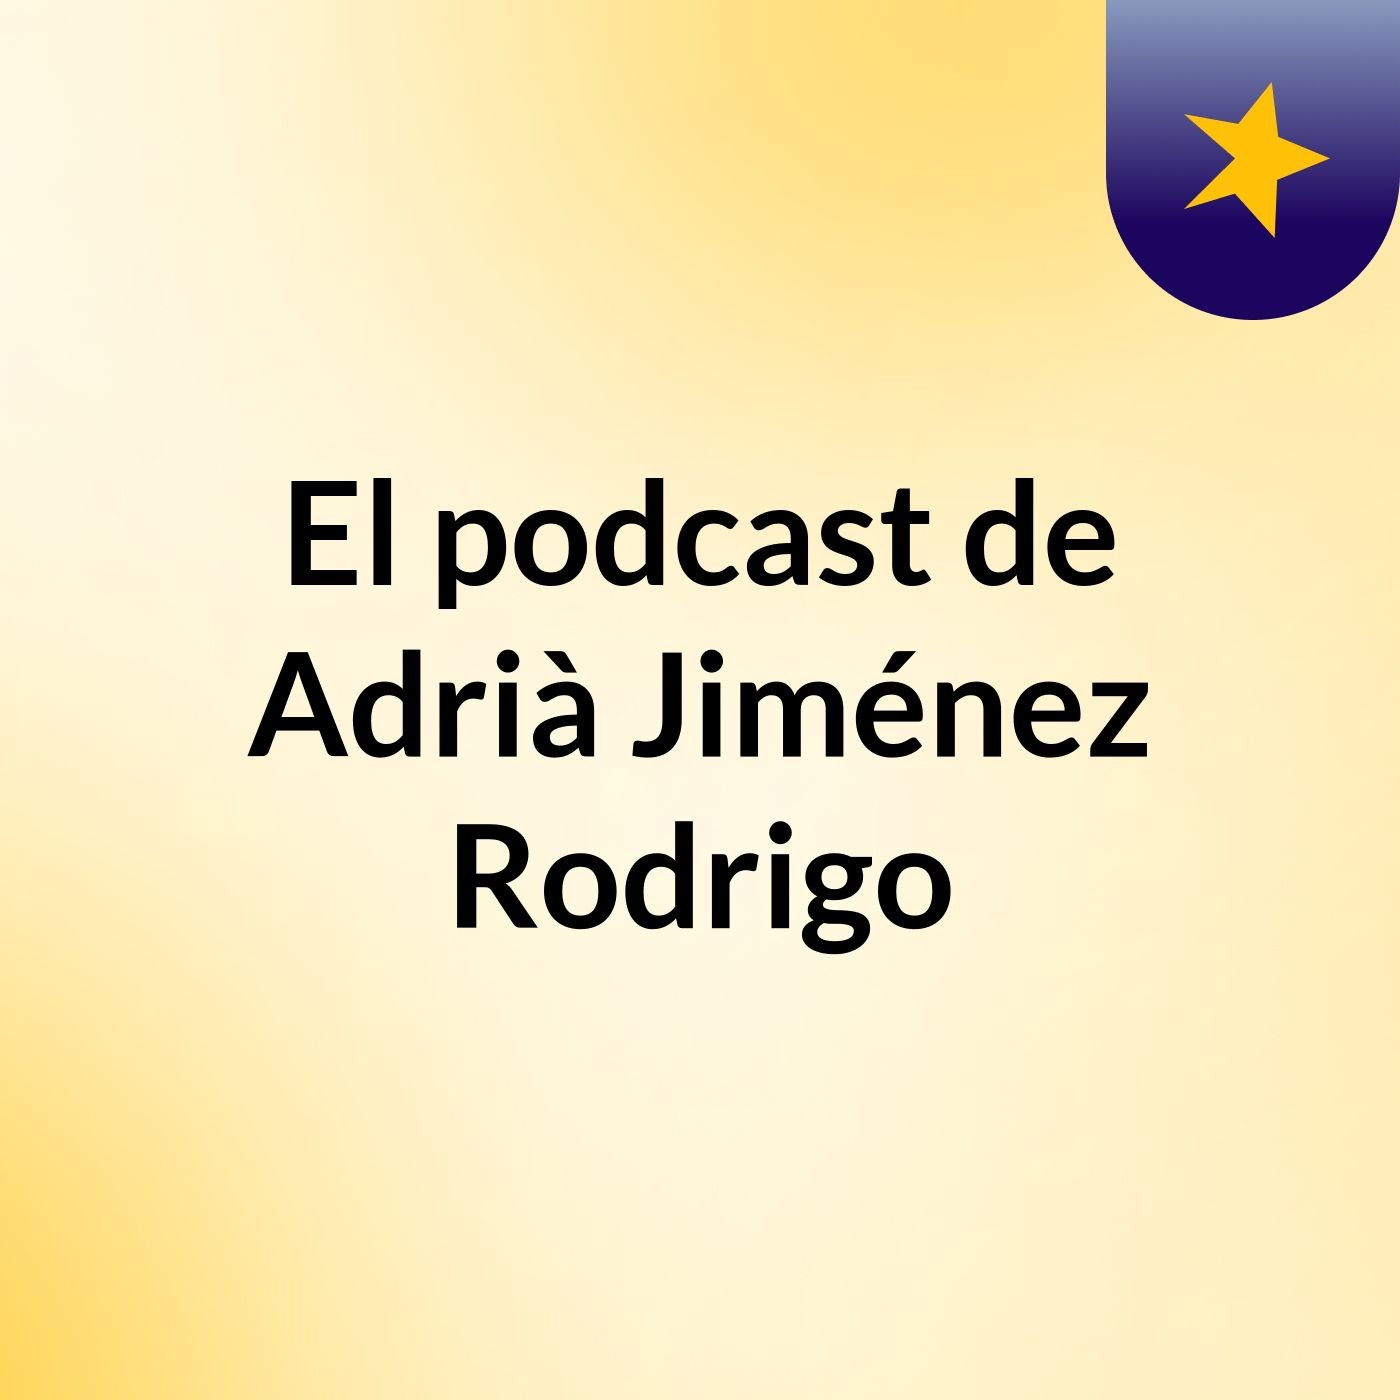 El podcast de Adrià Jiménez Rodrigo